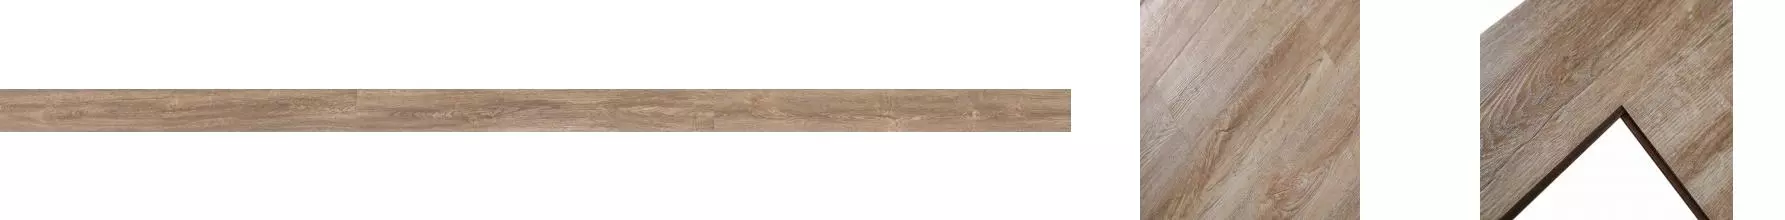 Ламинат «Wood Style»  Cottage Харди 121,7х14,5 C1007 33 класс светло-коричневый